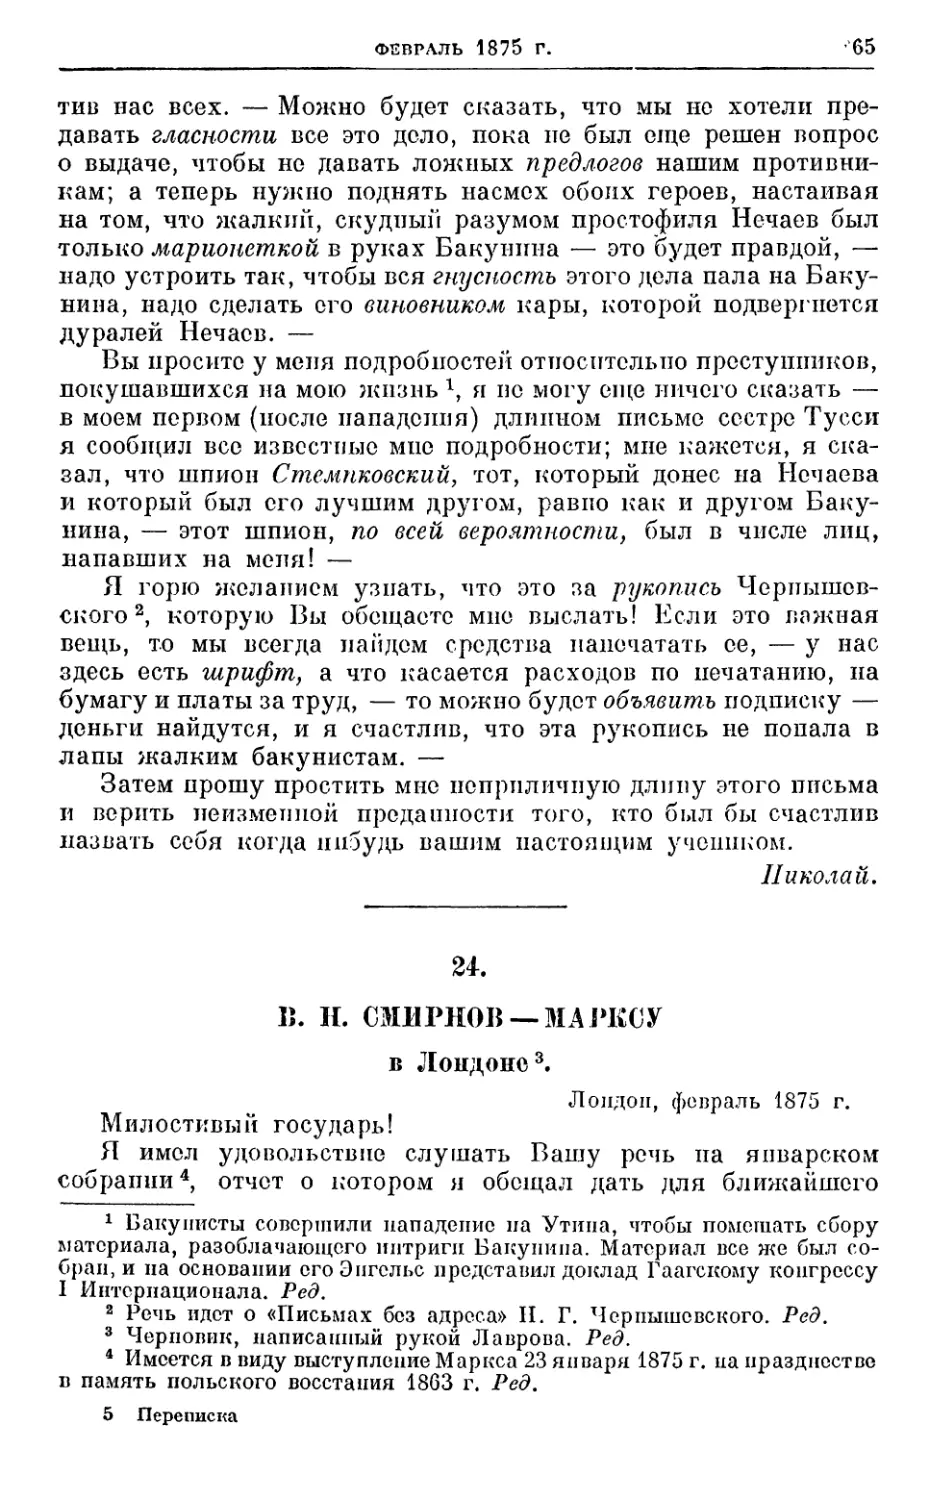 24. Смирнов — Марксу, февраль 1875г